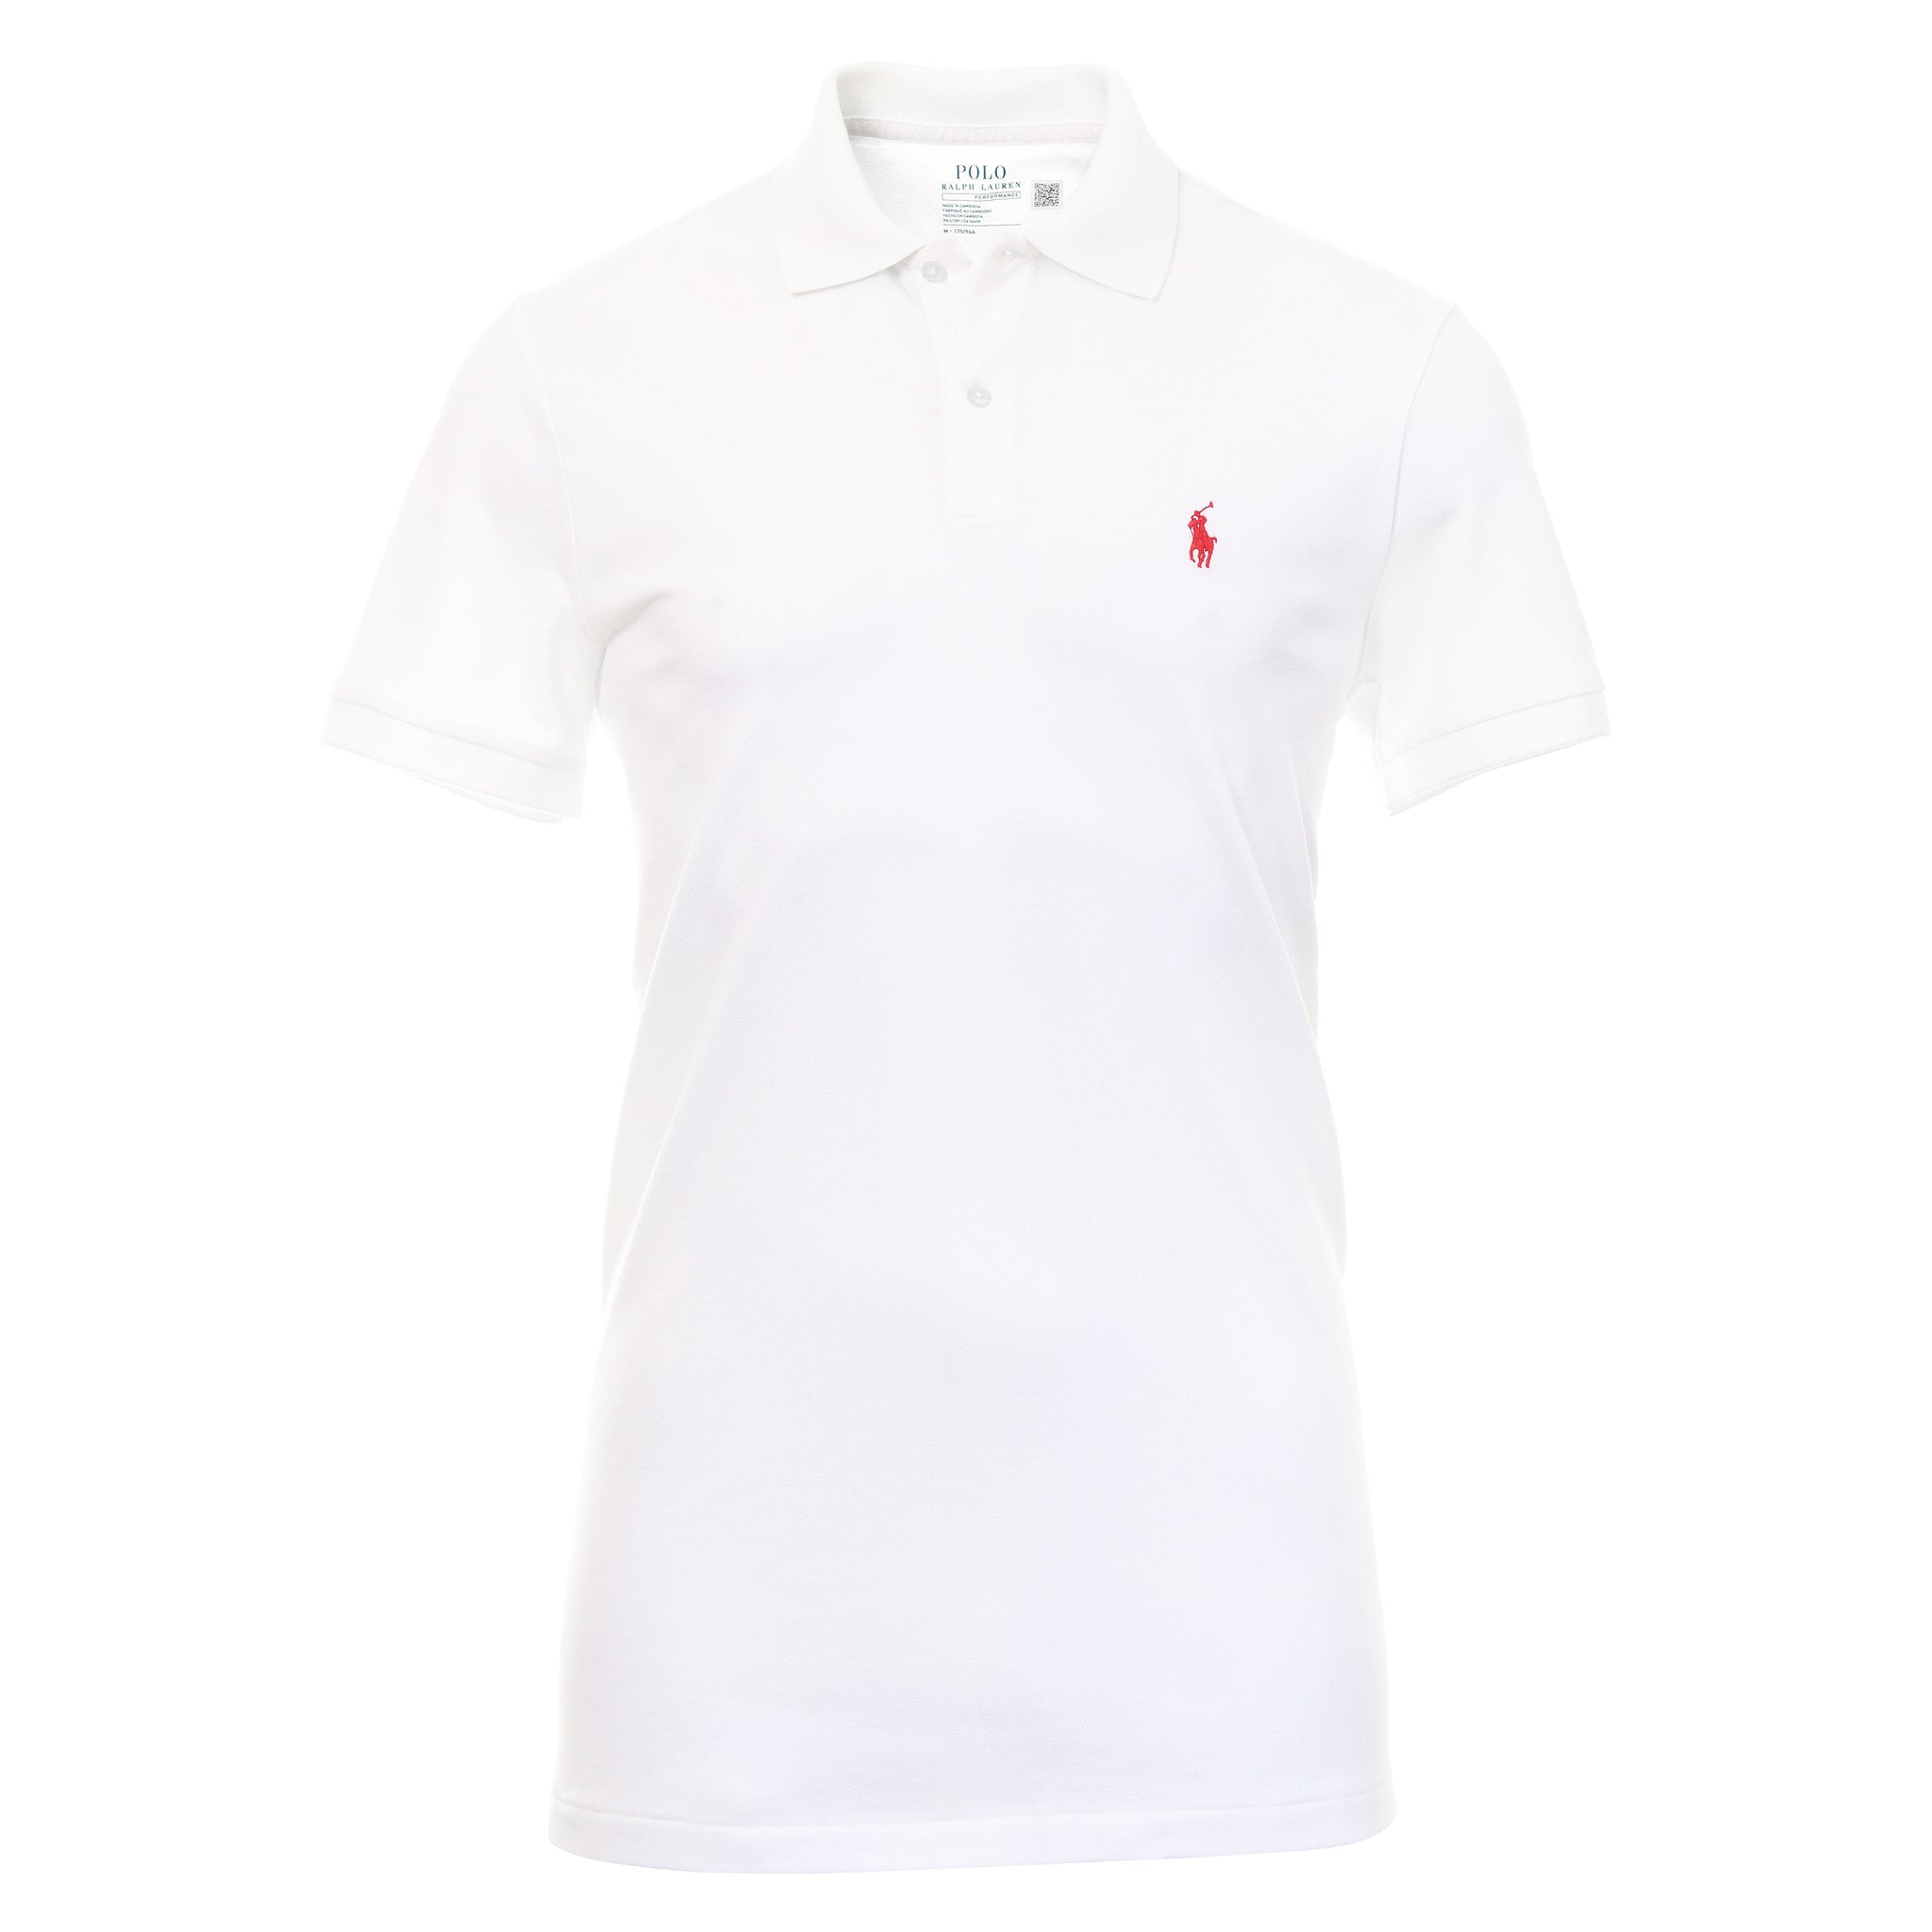 polo-golf-ralph-lauren-stretch-pique-shirt-710875145-pure-white-006